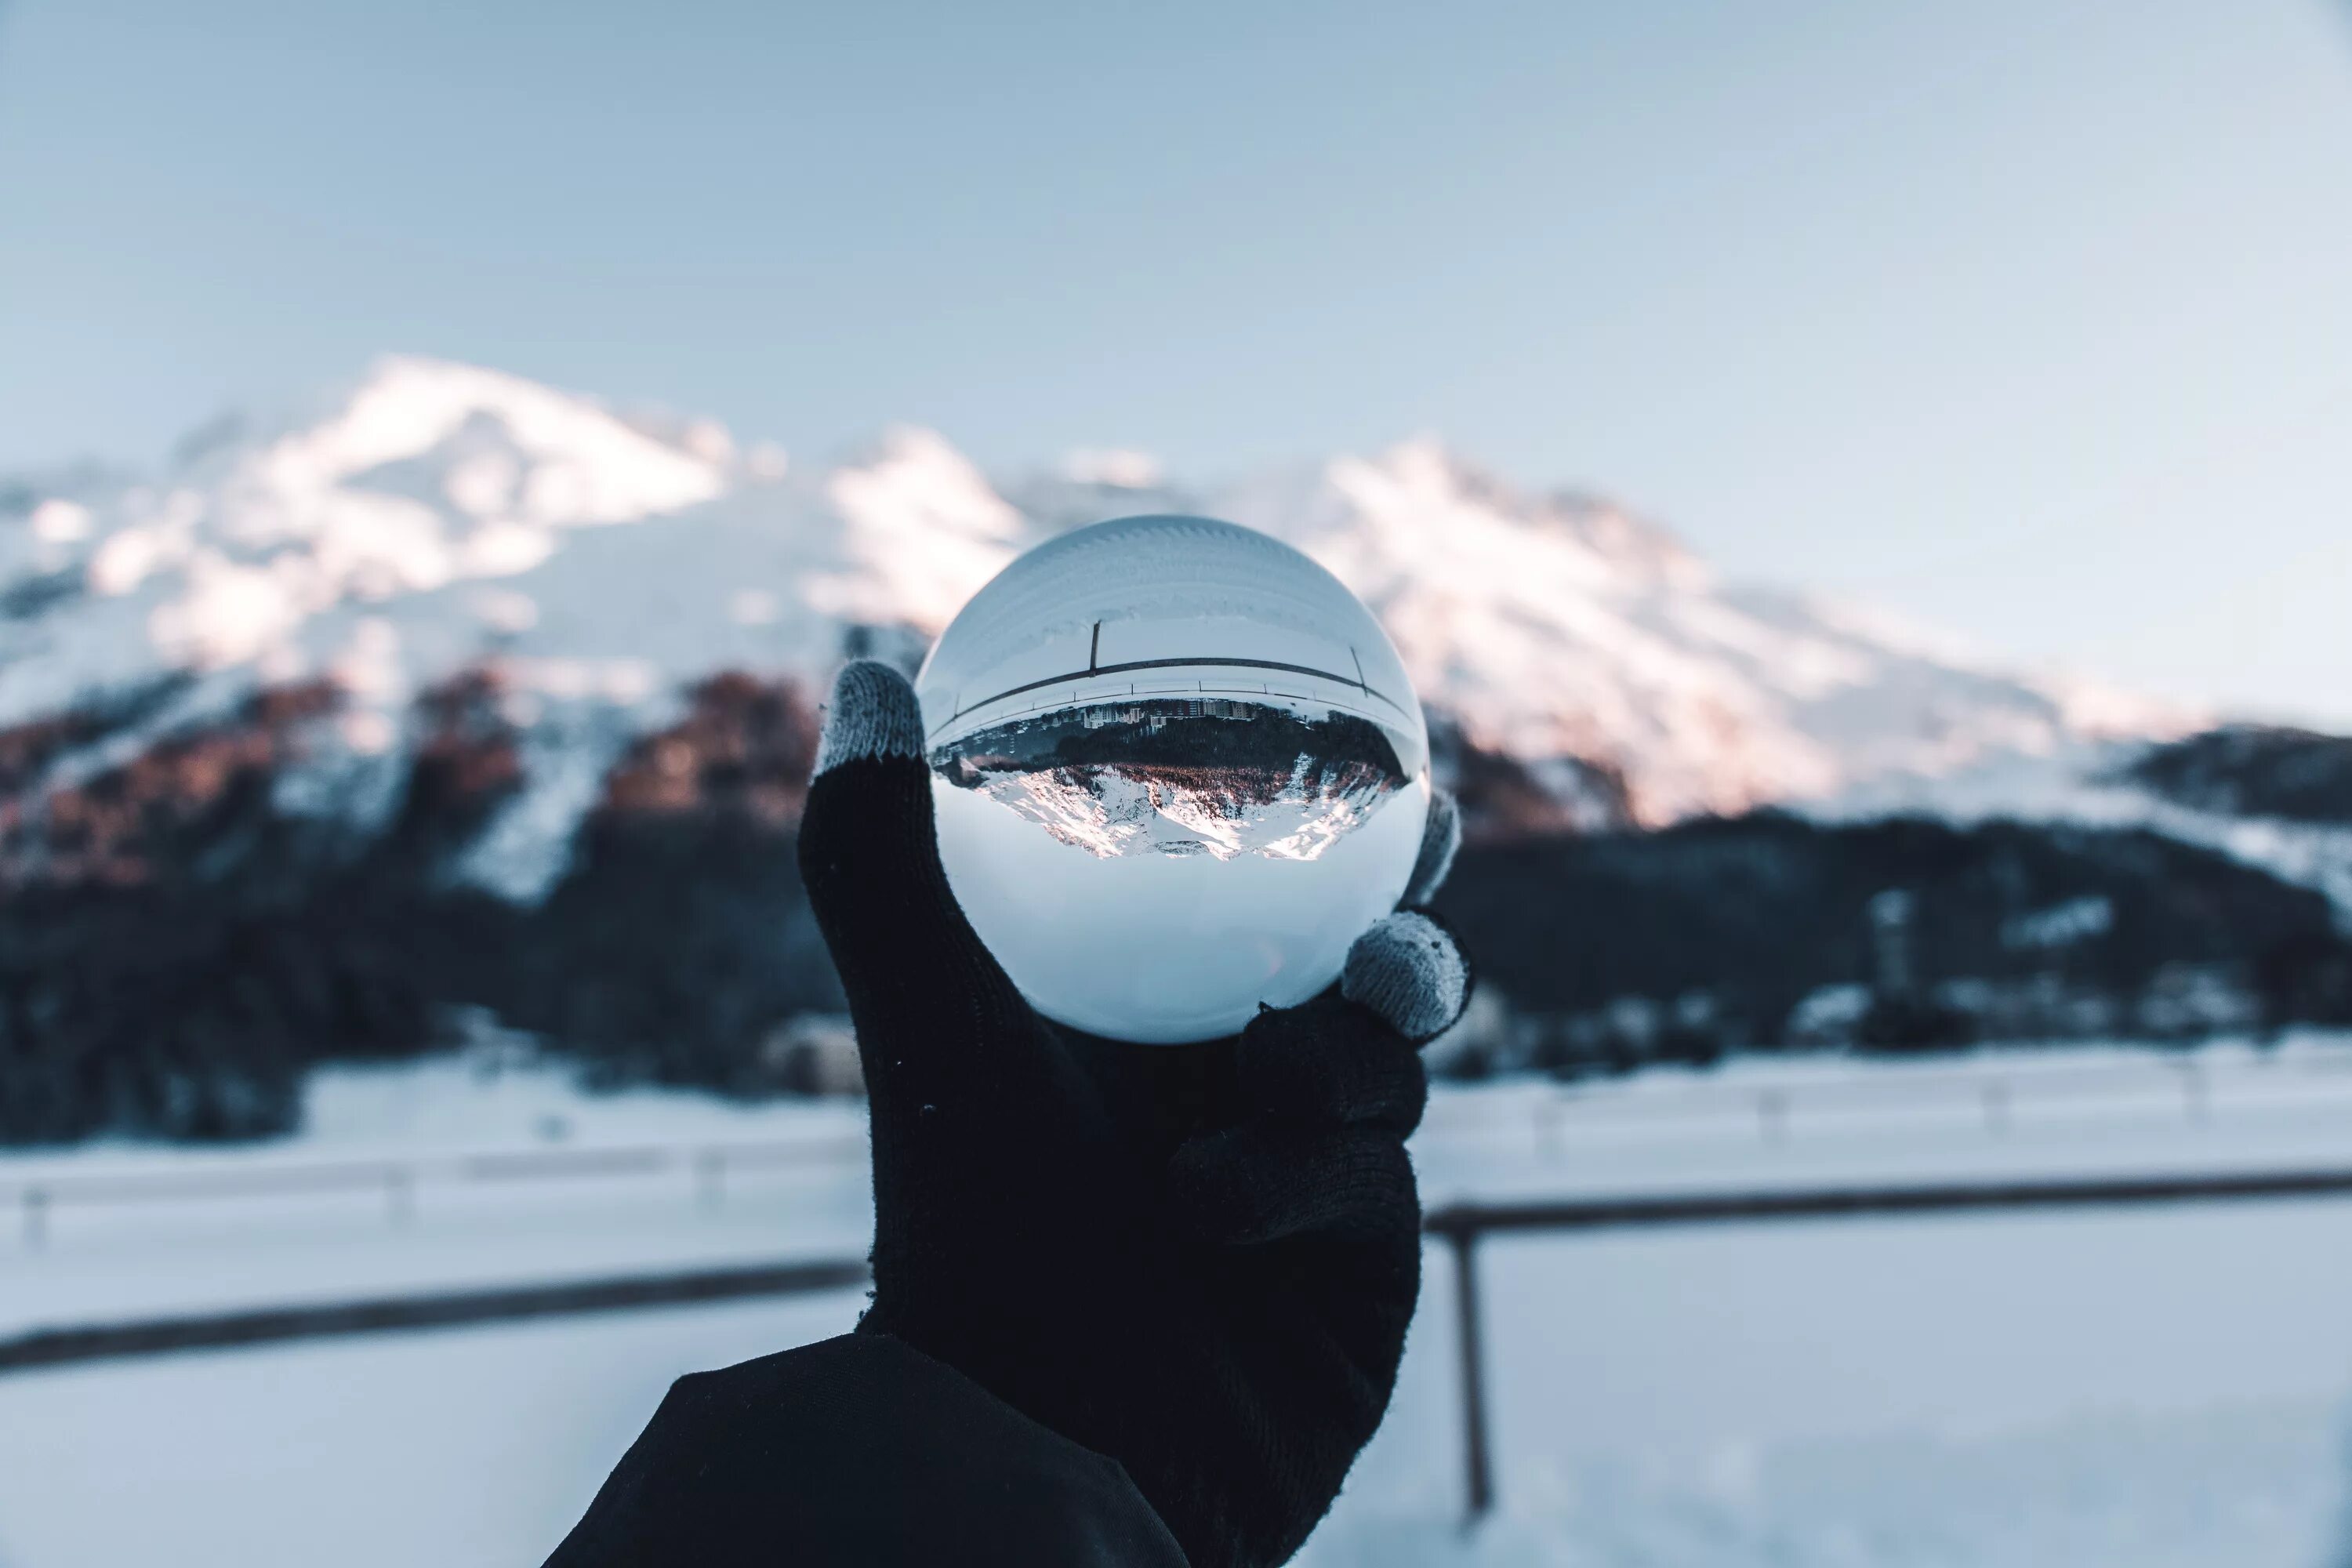 Отражение в шаре. Стеклянный шар в горах зимой. Стеклянный шар в руках зима. Стеклянный шар фон.